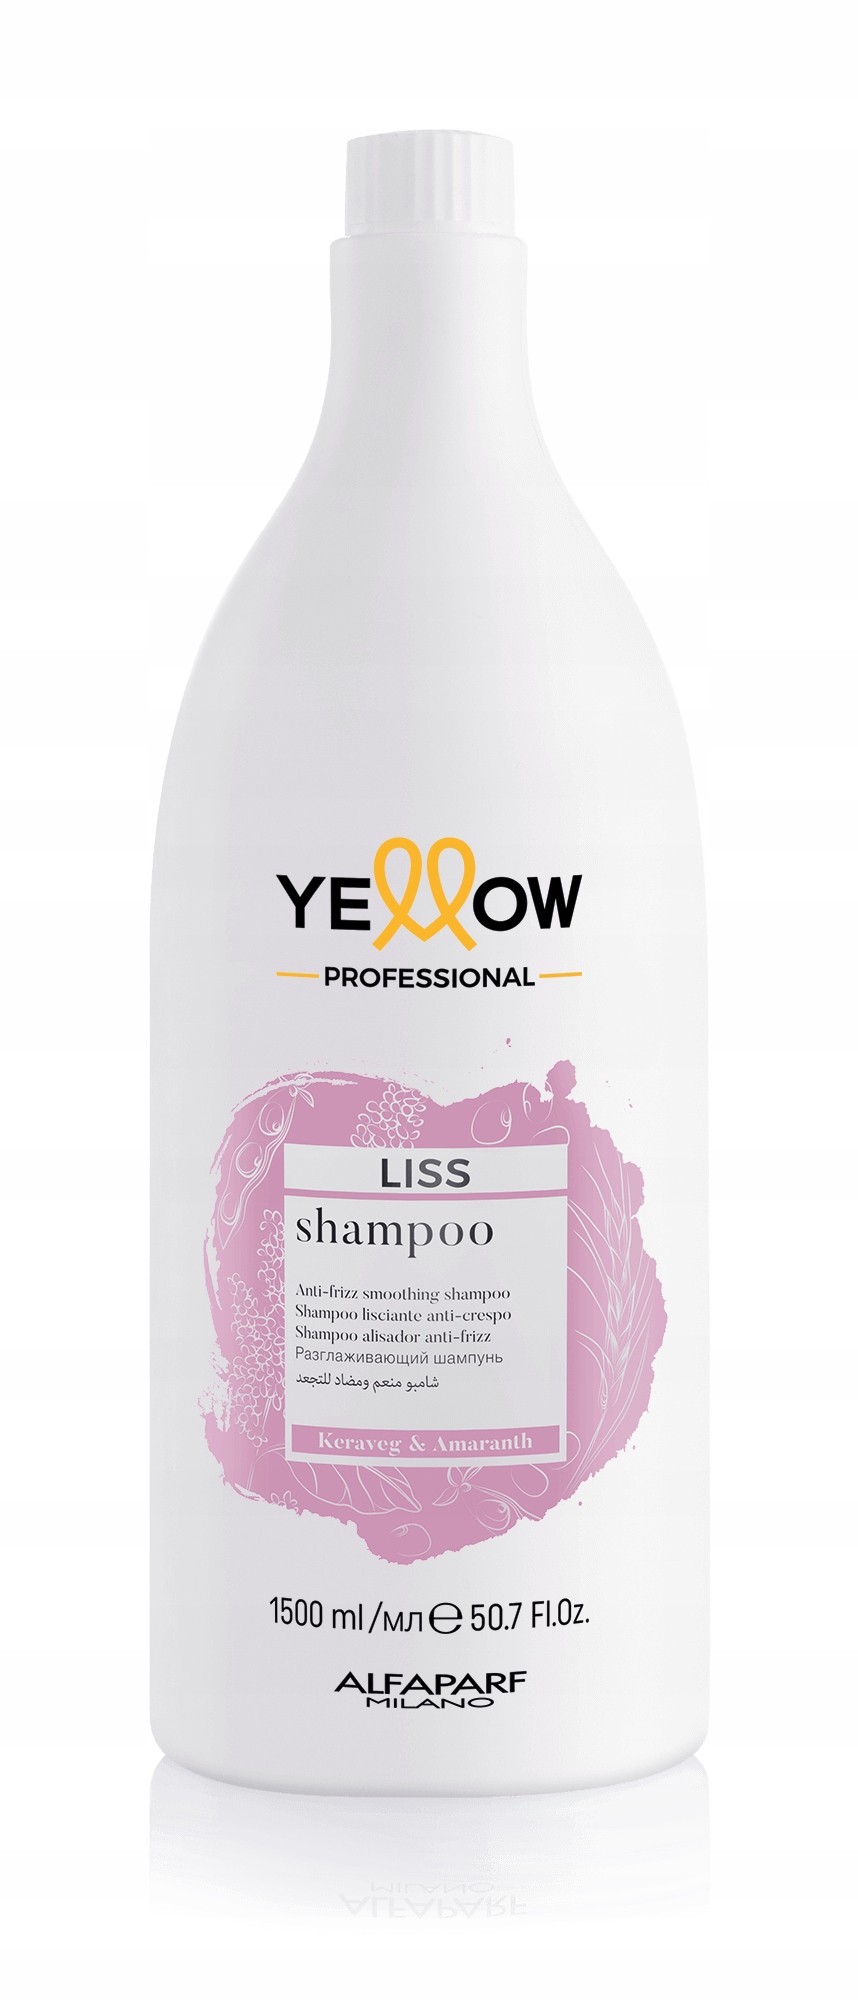 yellow szampon po keratynowym prostowaniu